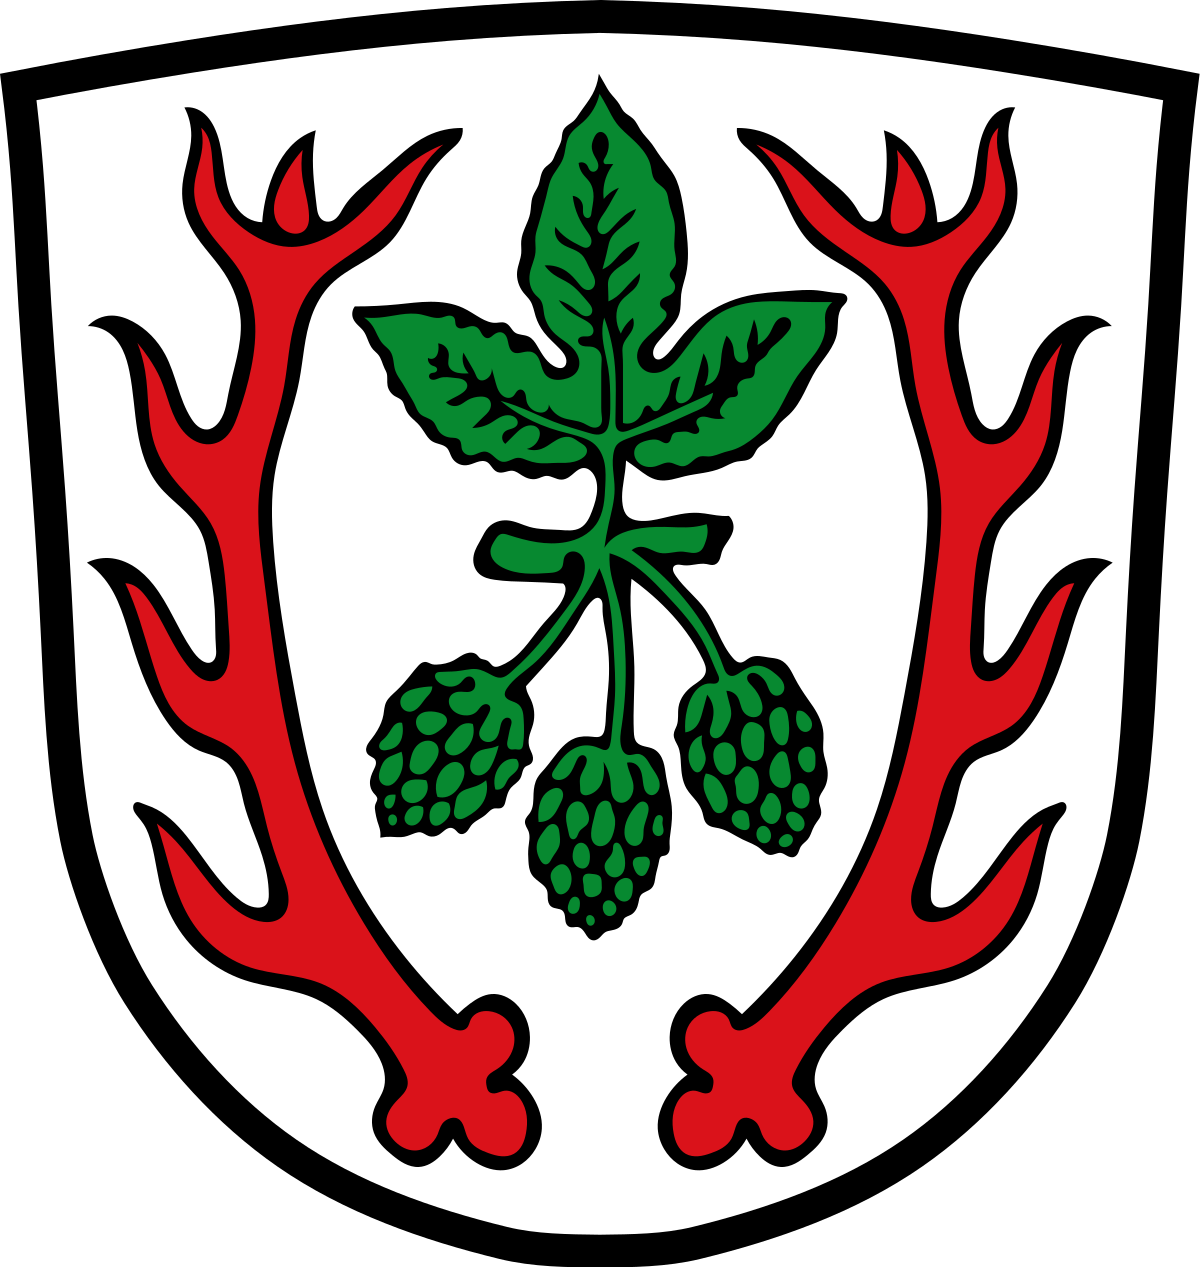 Aiglsbach